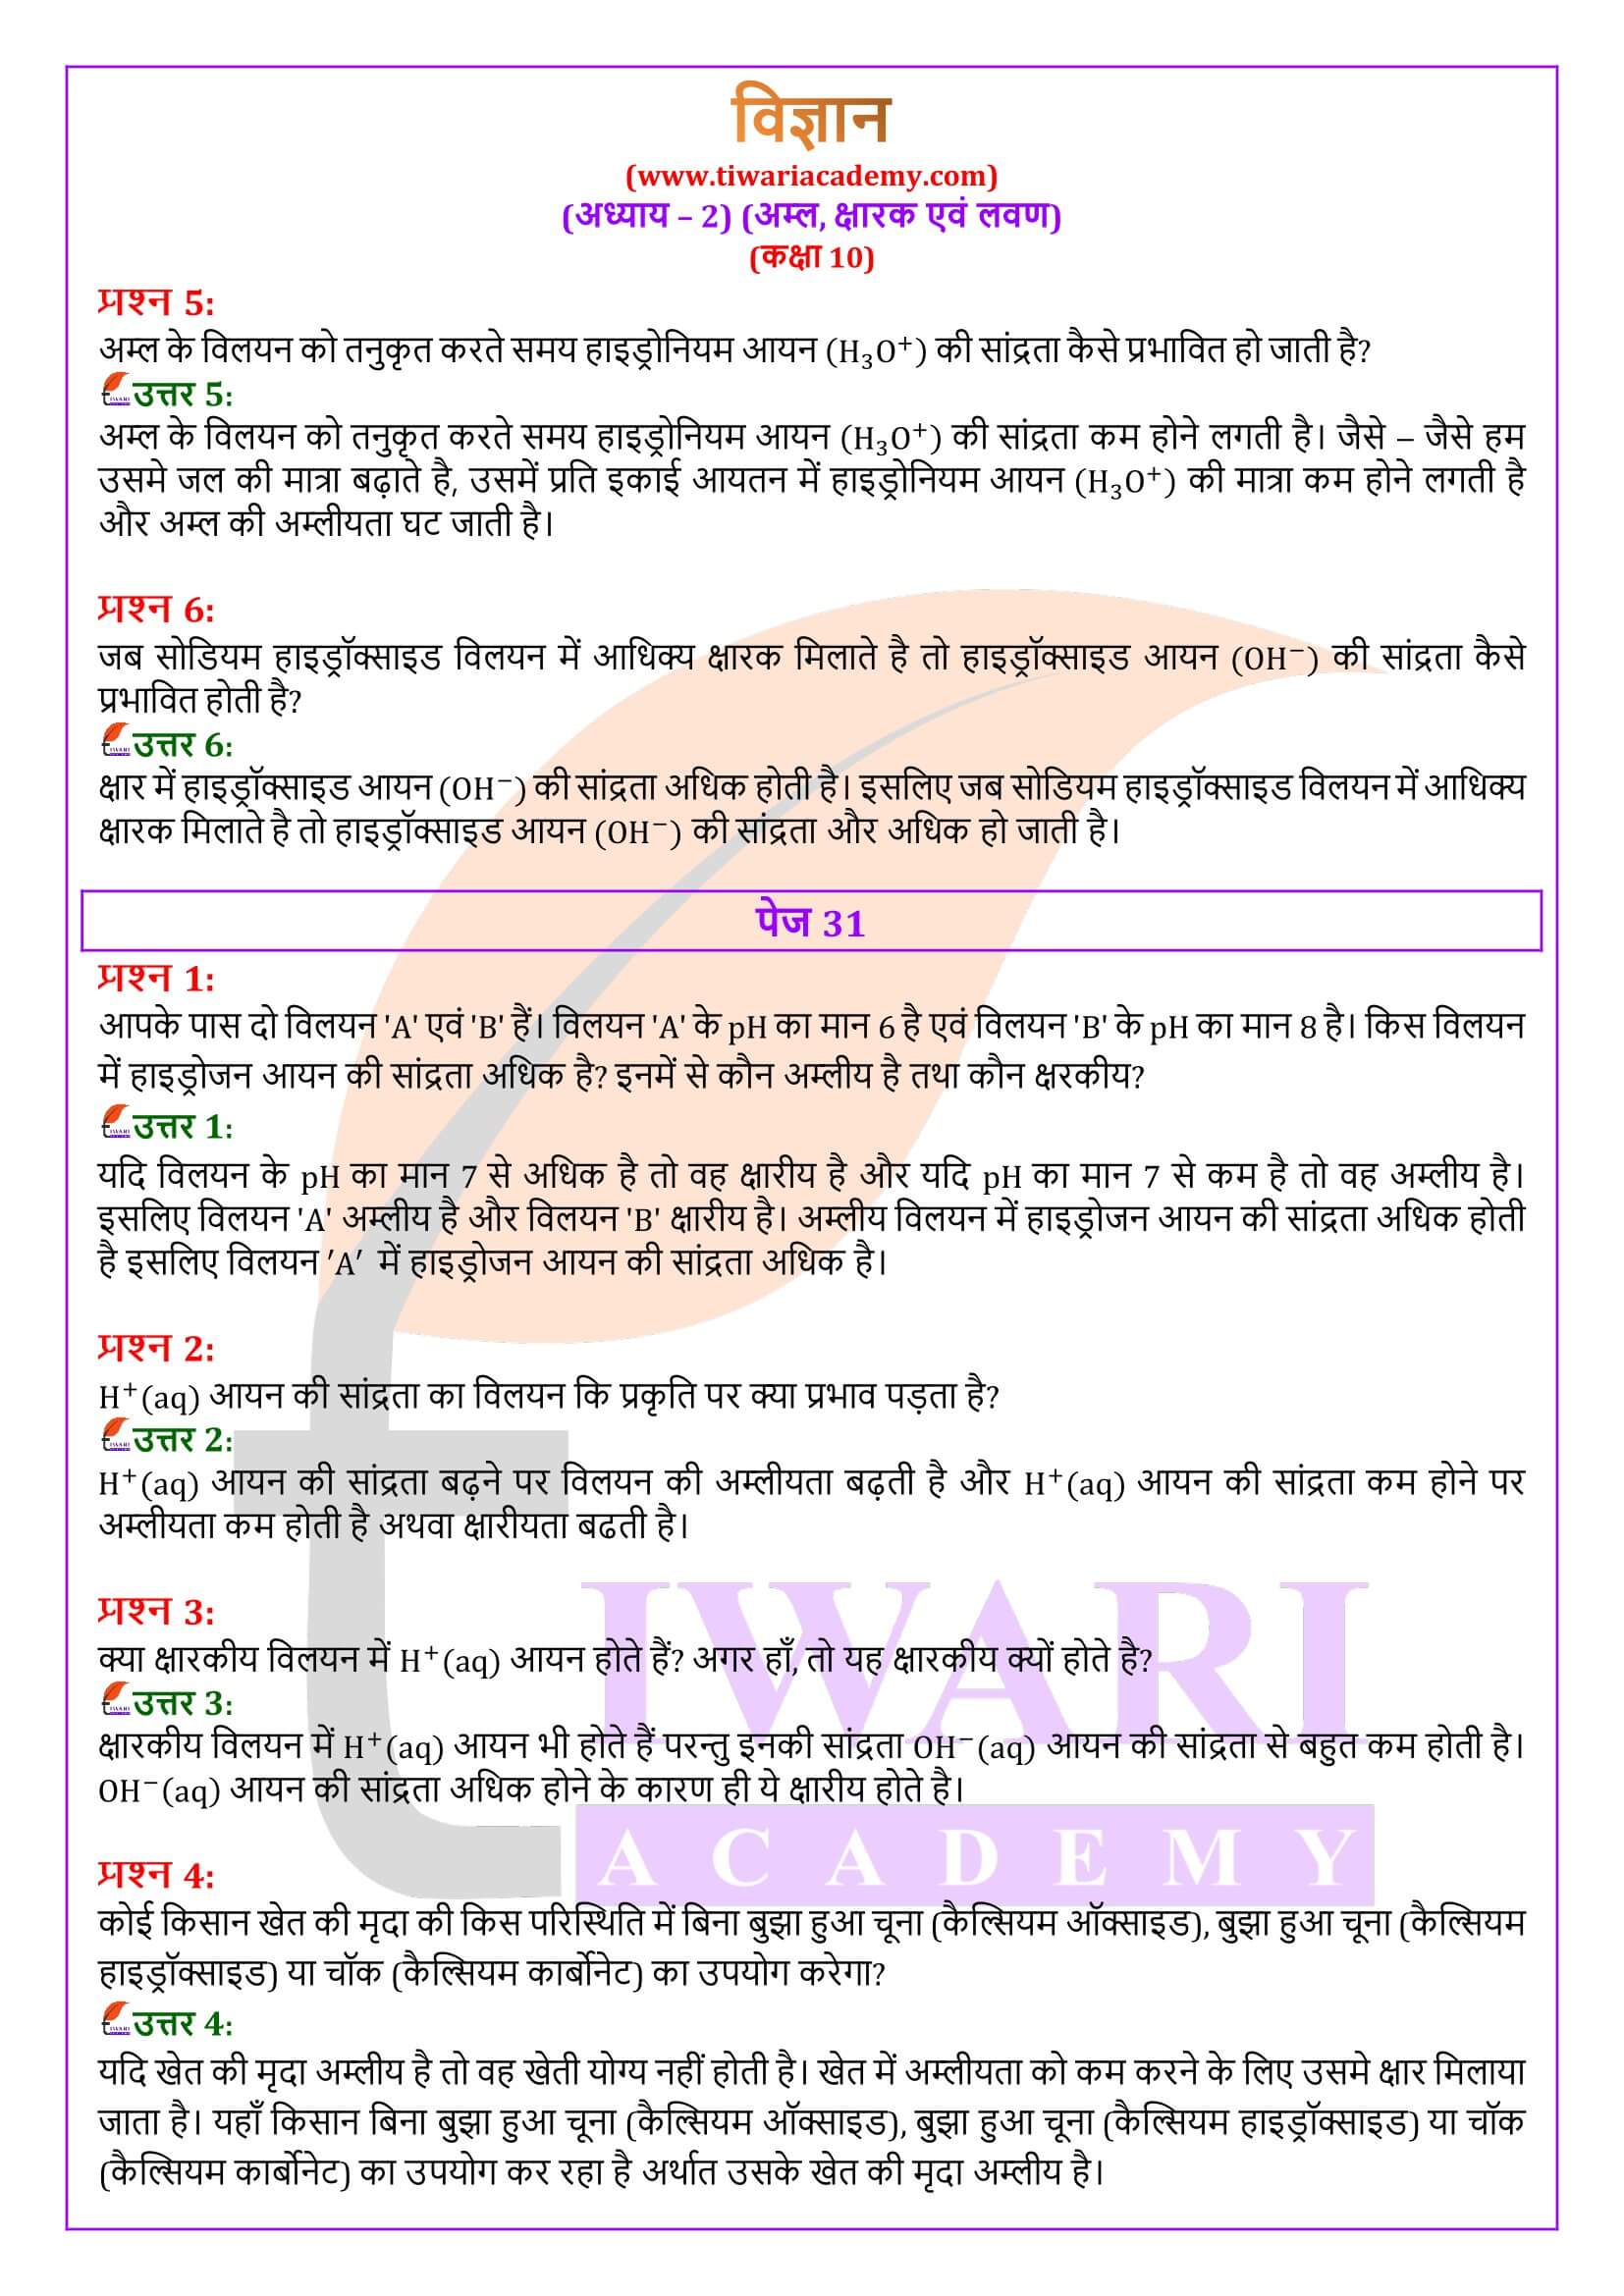 कक्षा 10 विज्ञान अध्याय 2 की हिंदी में गाइड